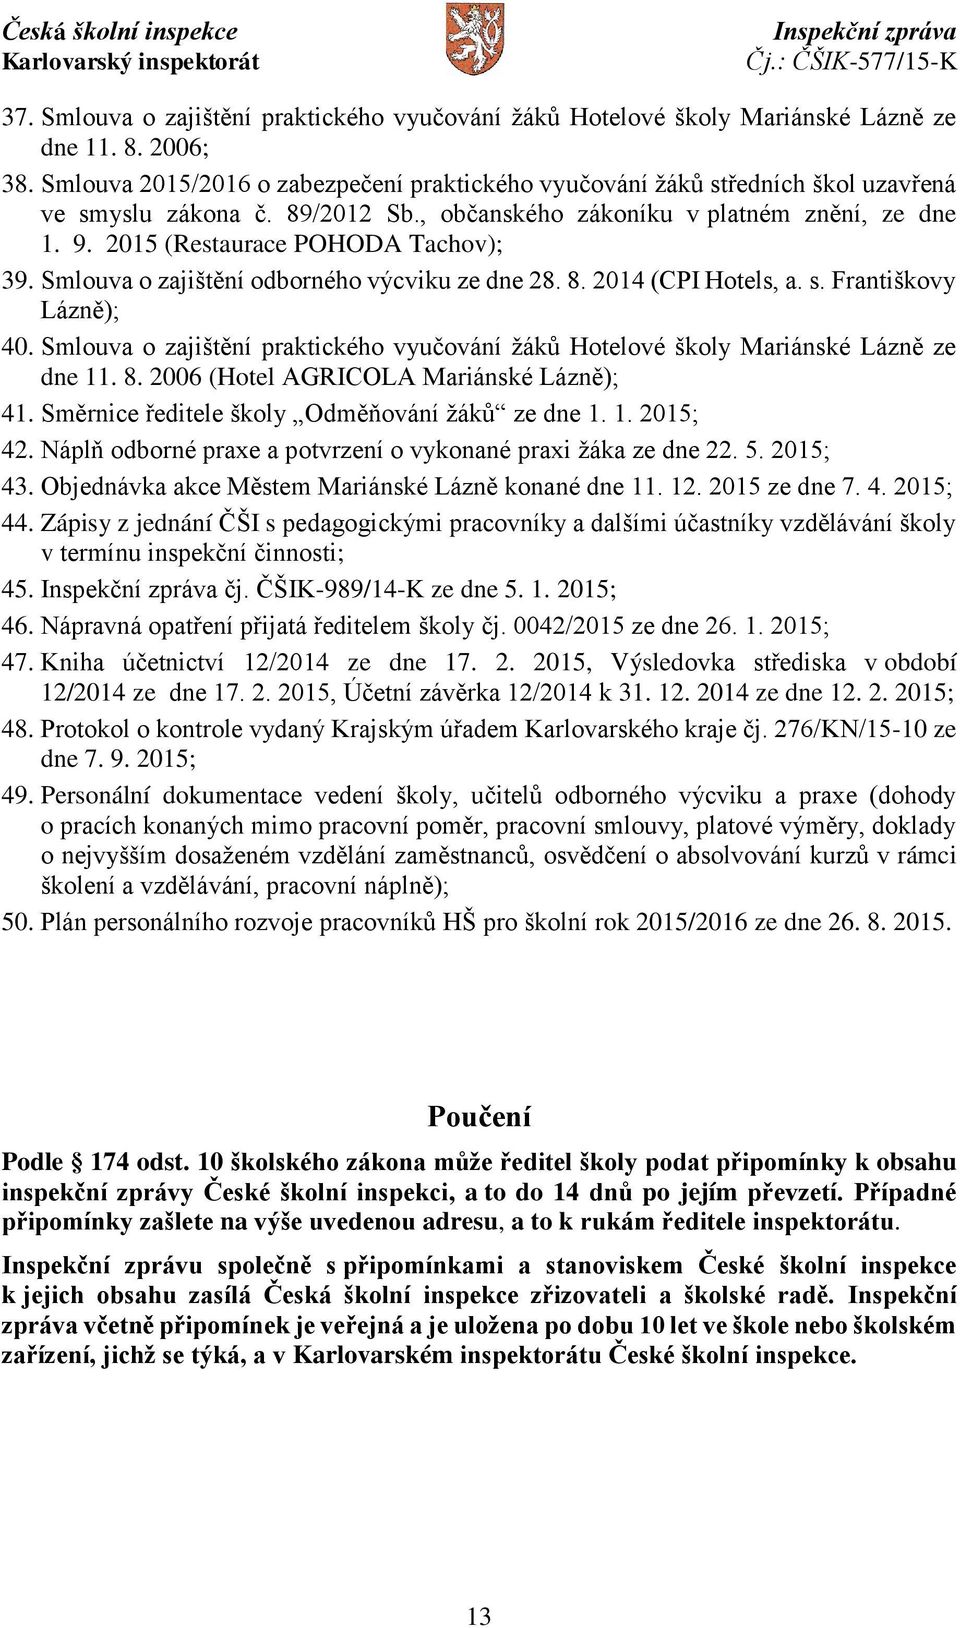 2015 (Restaurace POHODA Tachov); 39. Smlouva o zajištění odborného výcviku ze dne 28. 8. 2014 (CPI Hotels, a. s. Františkovy Lázně); 40.